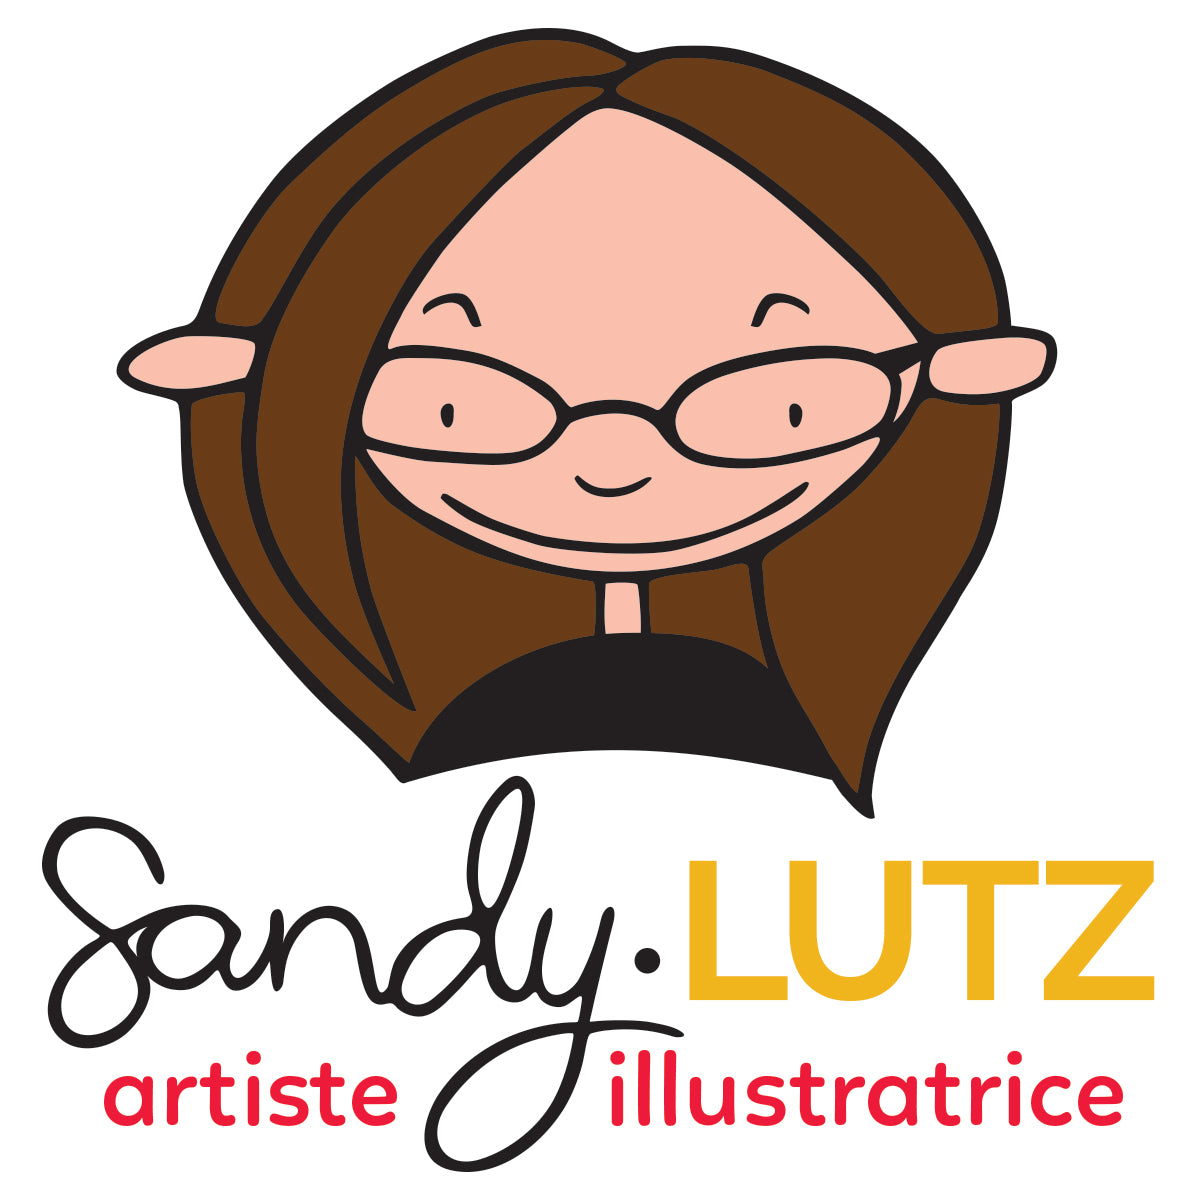 Sandy Lutz illustratrice - Chaque jour compte